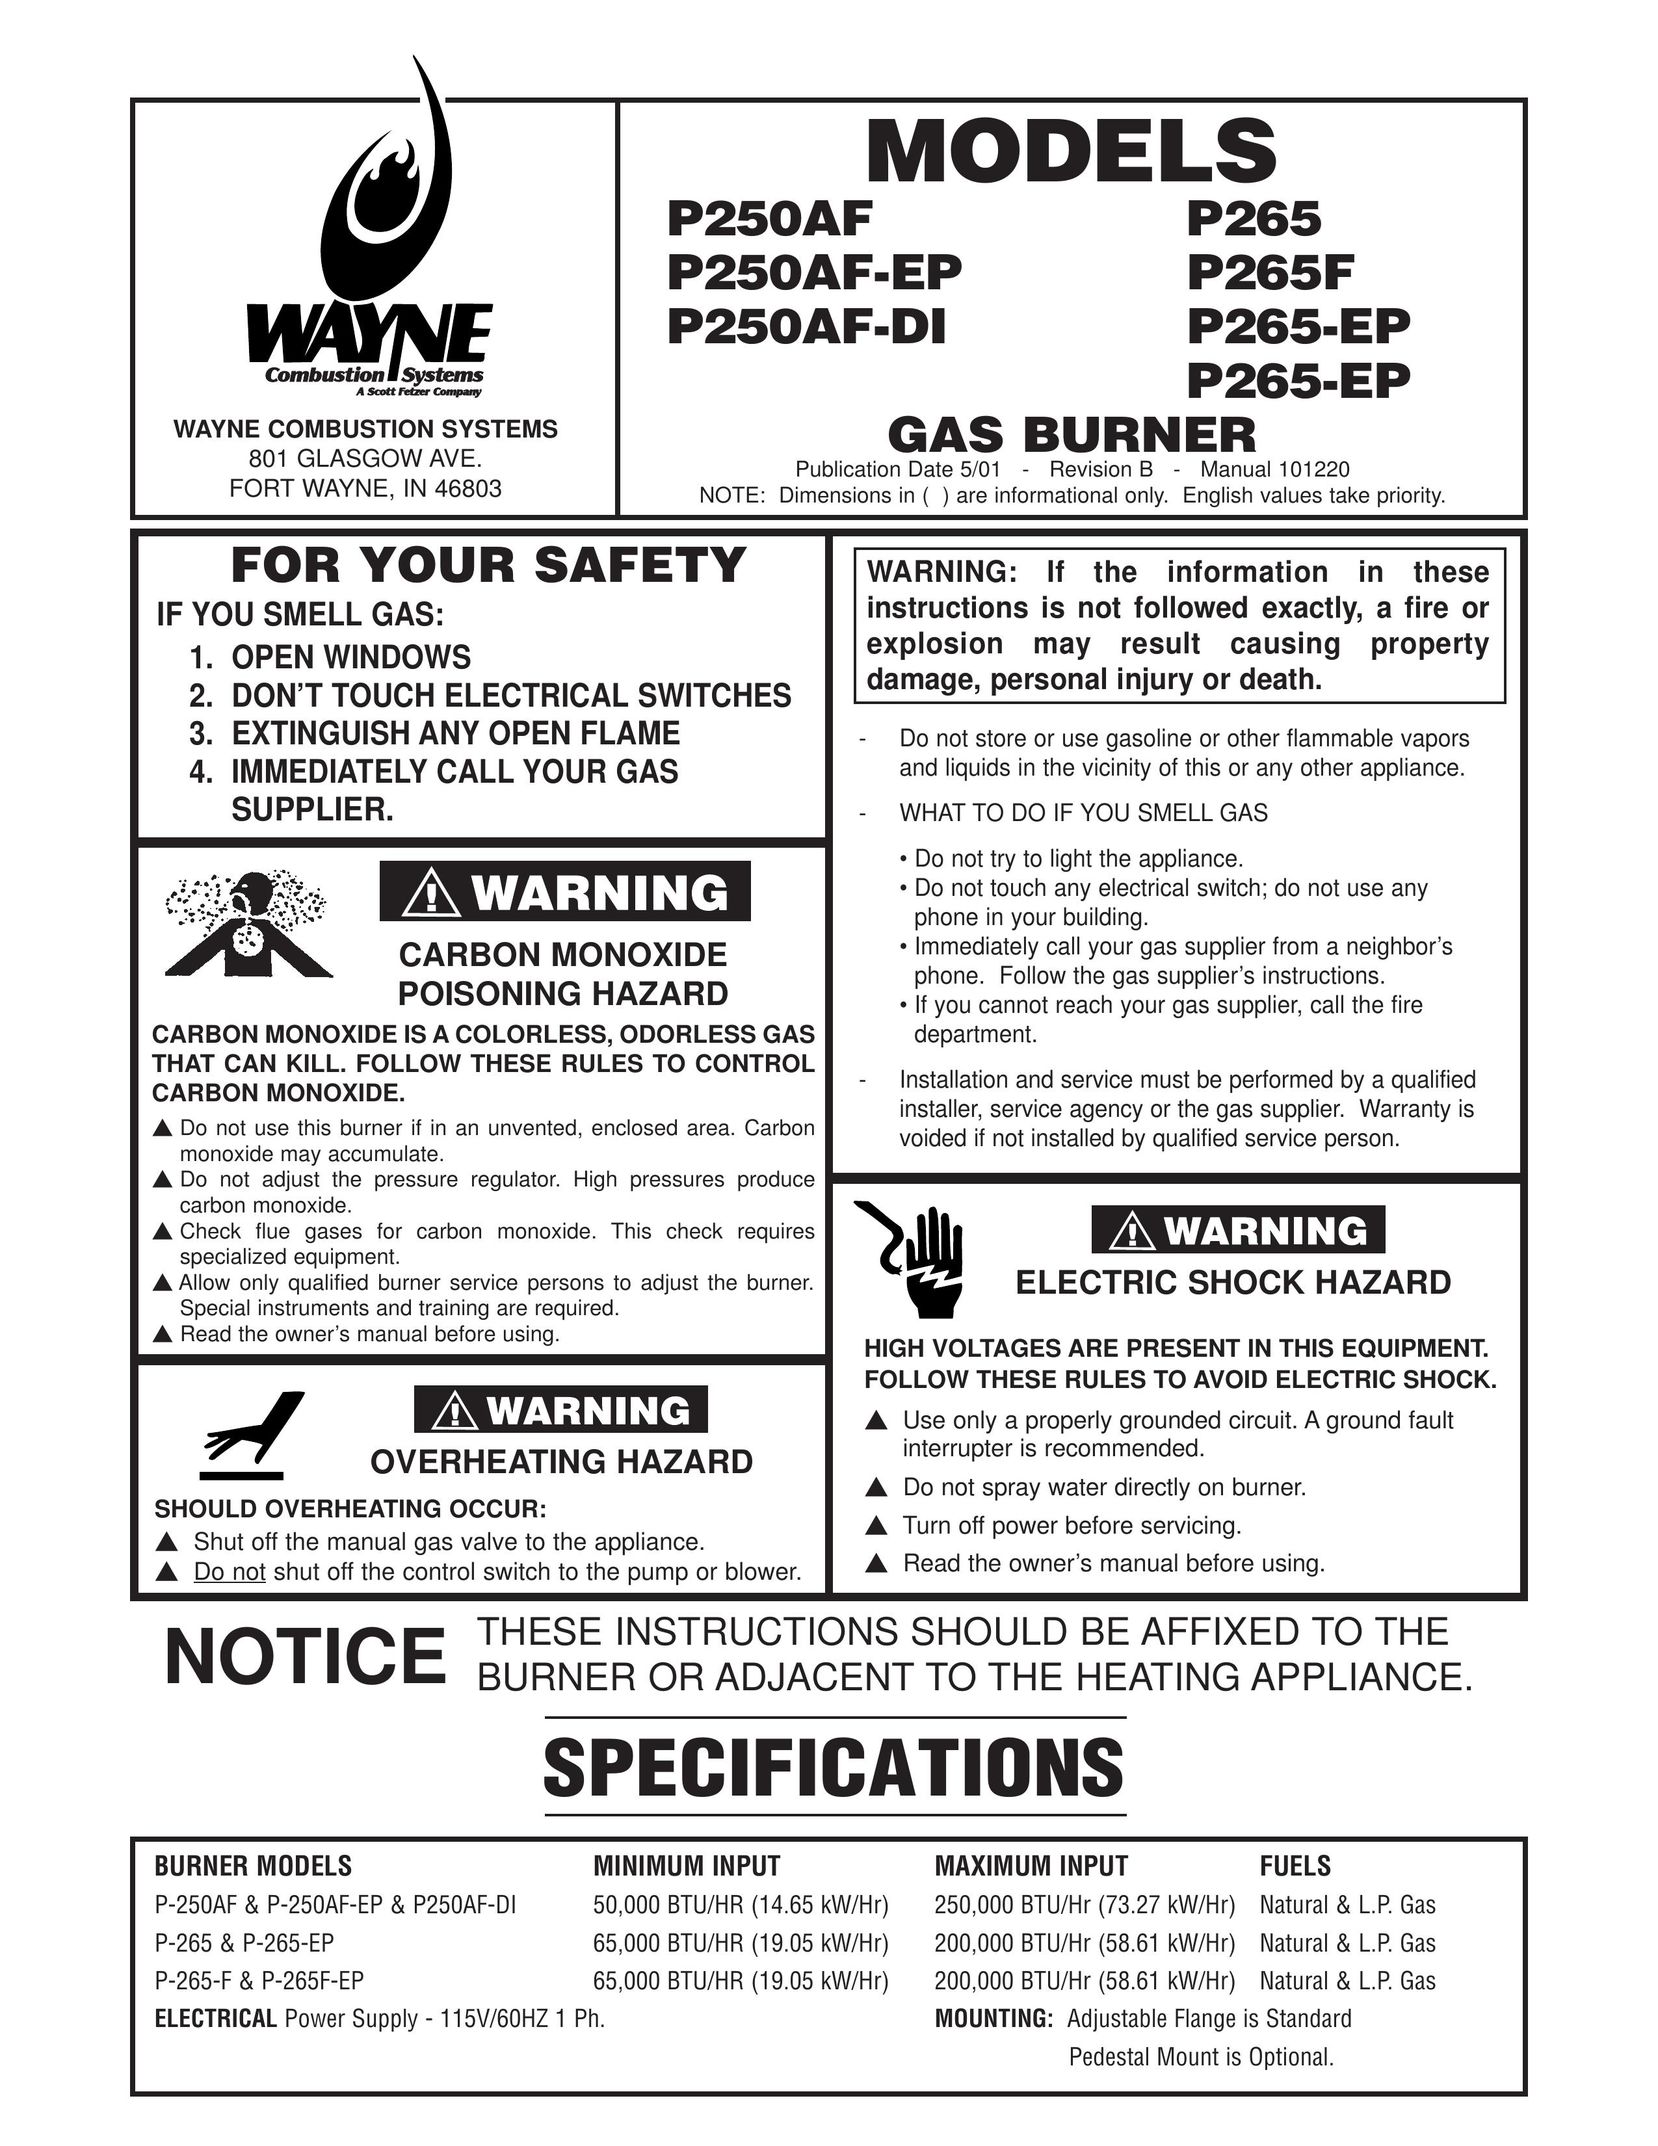 Wayne P265-EP Burner User Manual